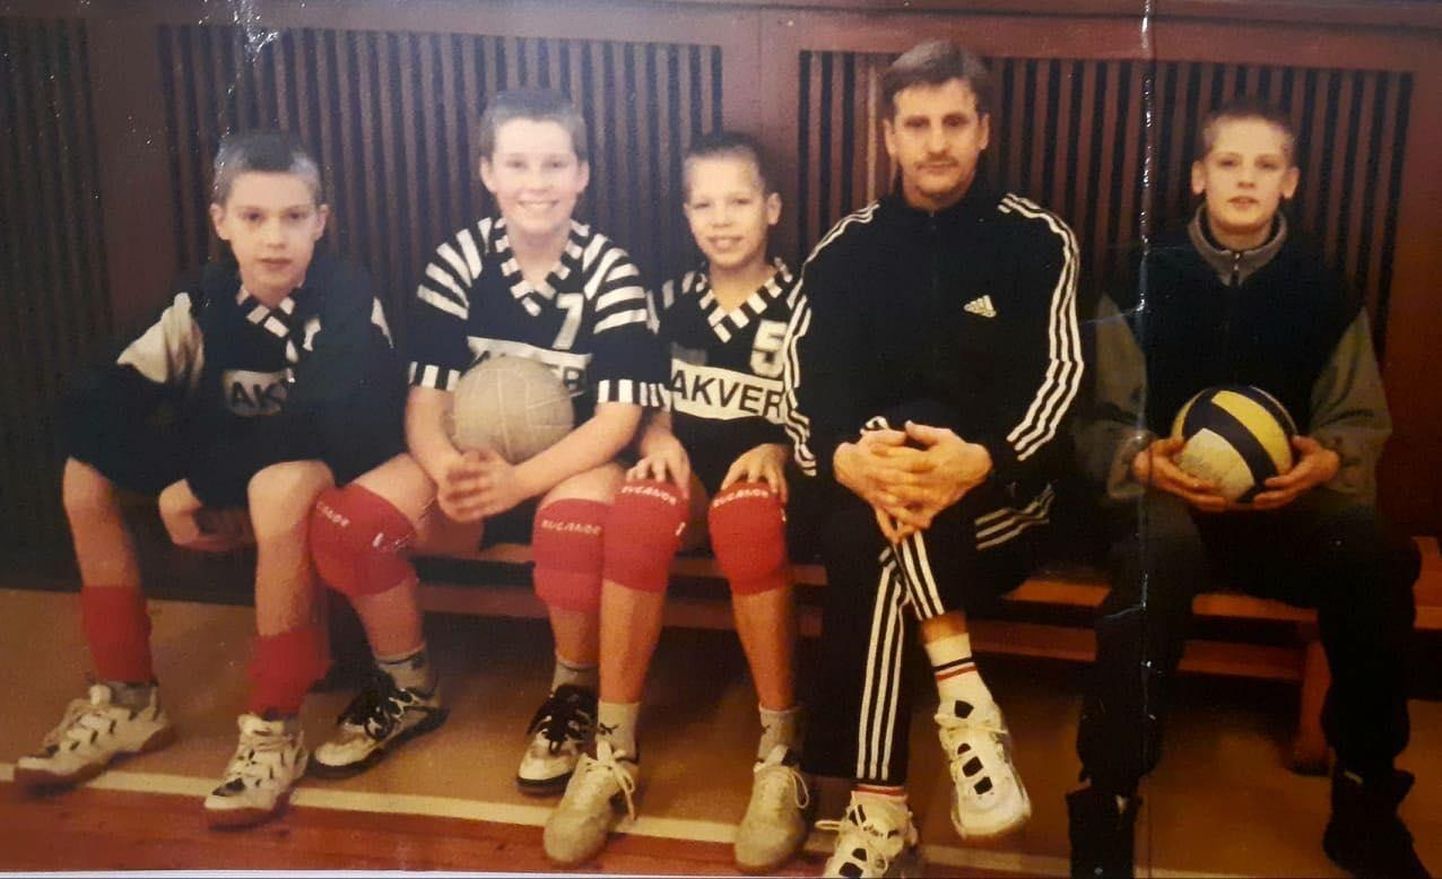 Aasta 2000, kui kõik on veel ees: reedel parimaks meesvõrkpalluriks kuulutatud rahvusmeeskonna nurgaründaja Martti Juhkami (vasakult kolmas) alustas oma karjääri treener Mati Meriranna käe alt. 